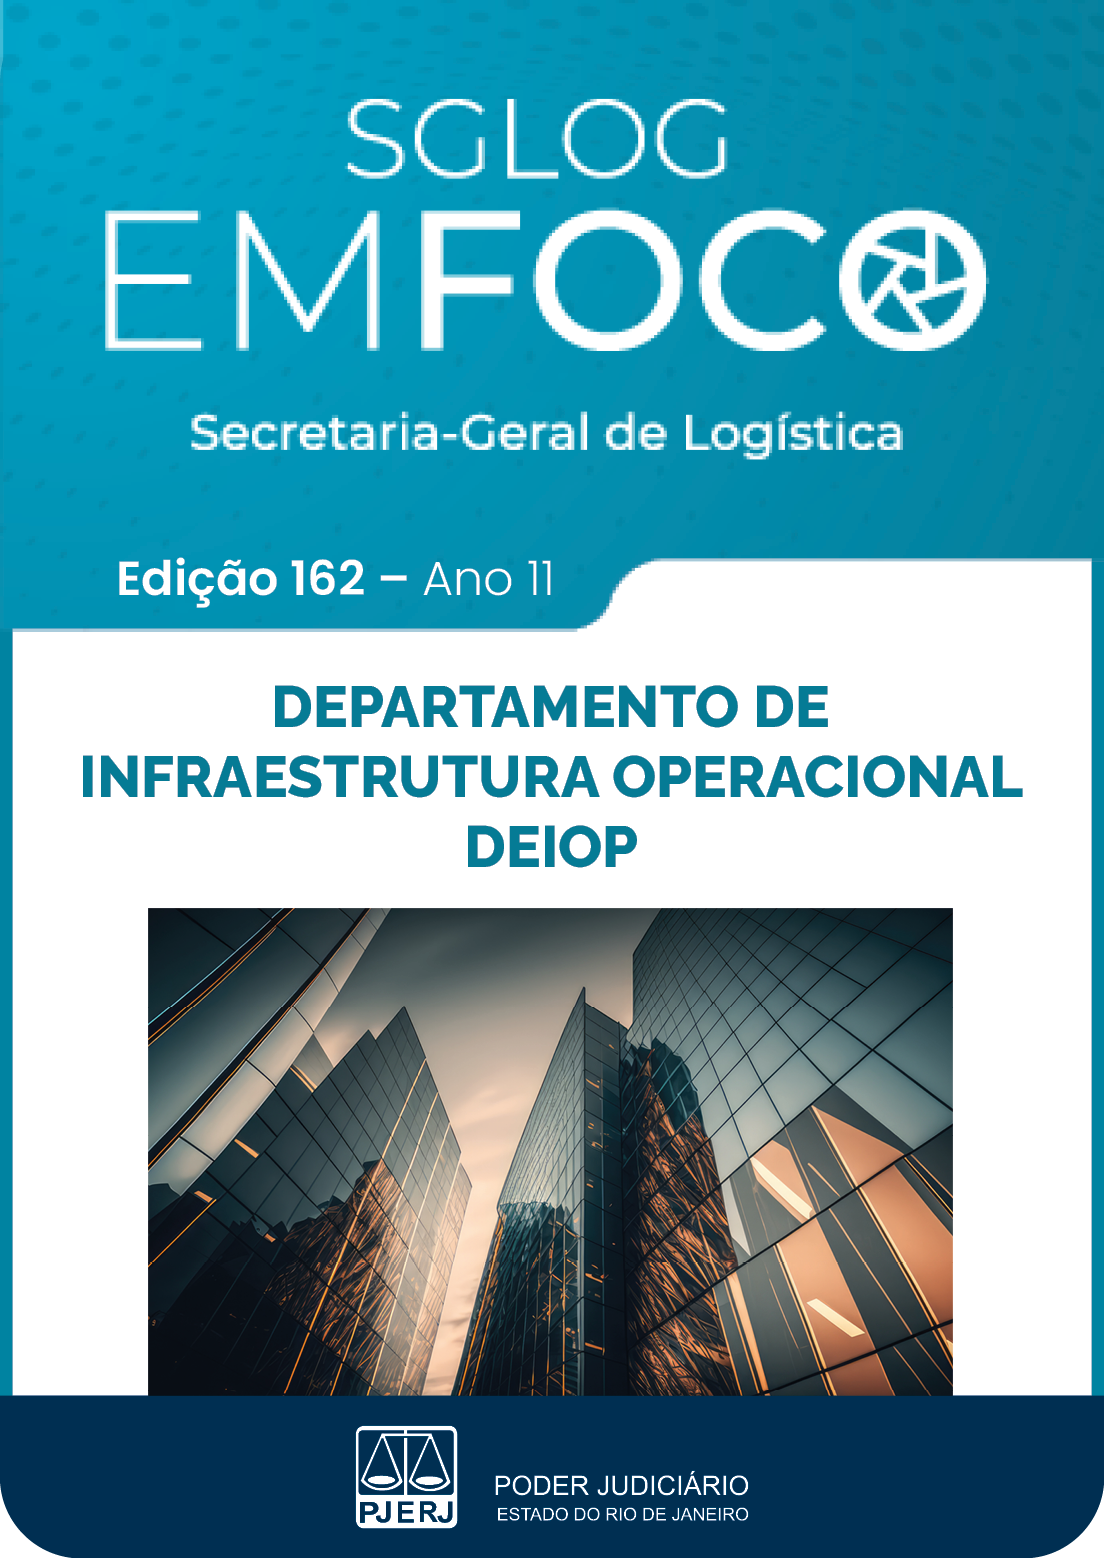 SGLOG EM FOCO - Secretaria-Geral de Logística - Edição 162 - ano 11 - DEPARTAMENTO DE INFRAESTRUTURA OPERACIONAL DEIOP